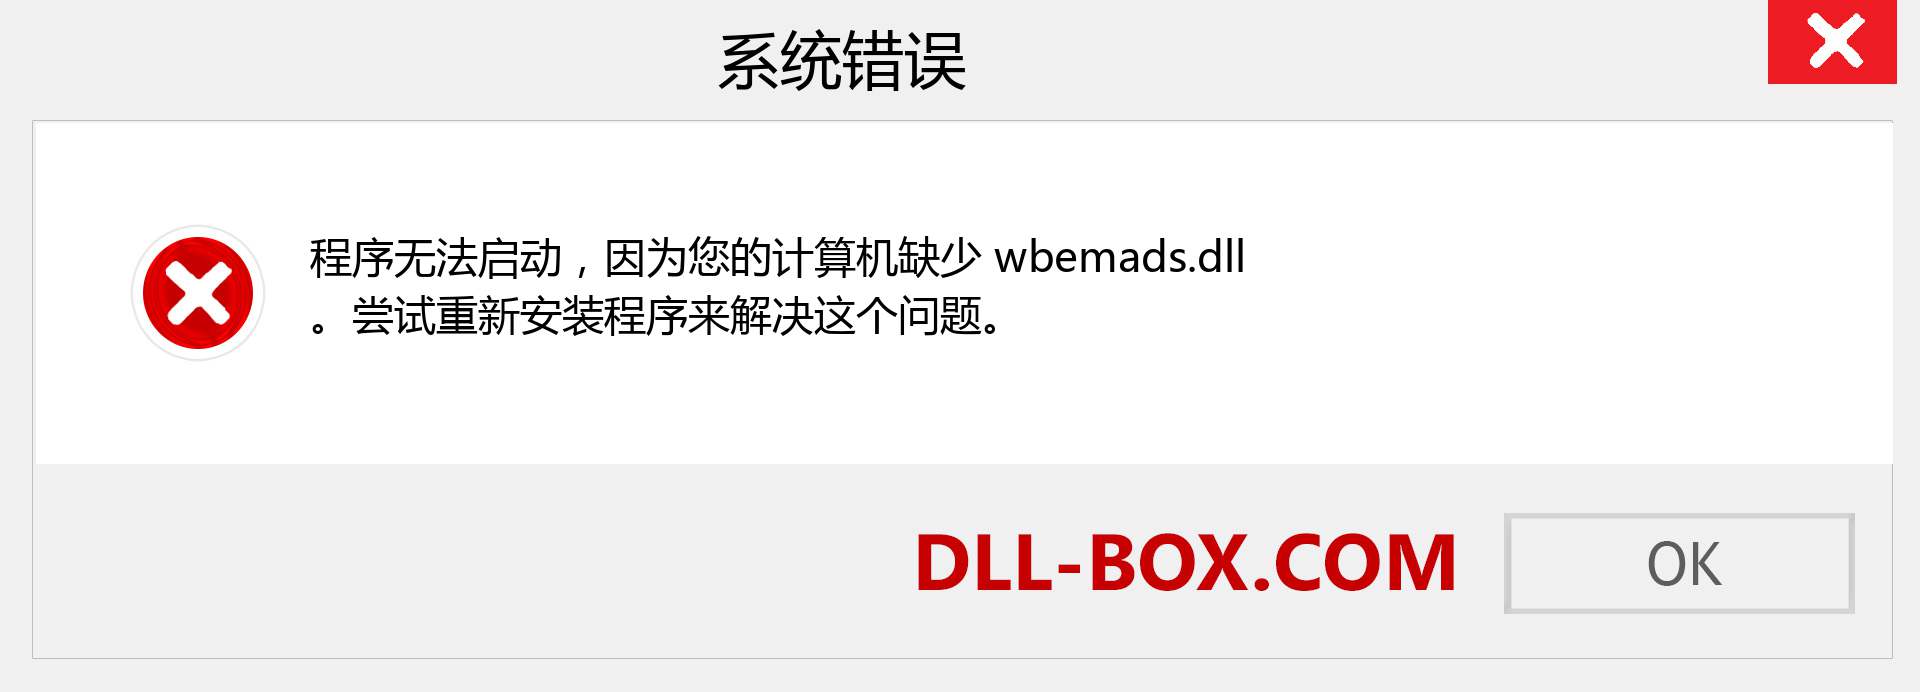 wbemads.dll 文件丢失？。 适用于 Windows 7、8、10 的下载 - 修复 Windows、照片、图像上的 wbemads dll 丢失错误